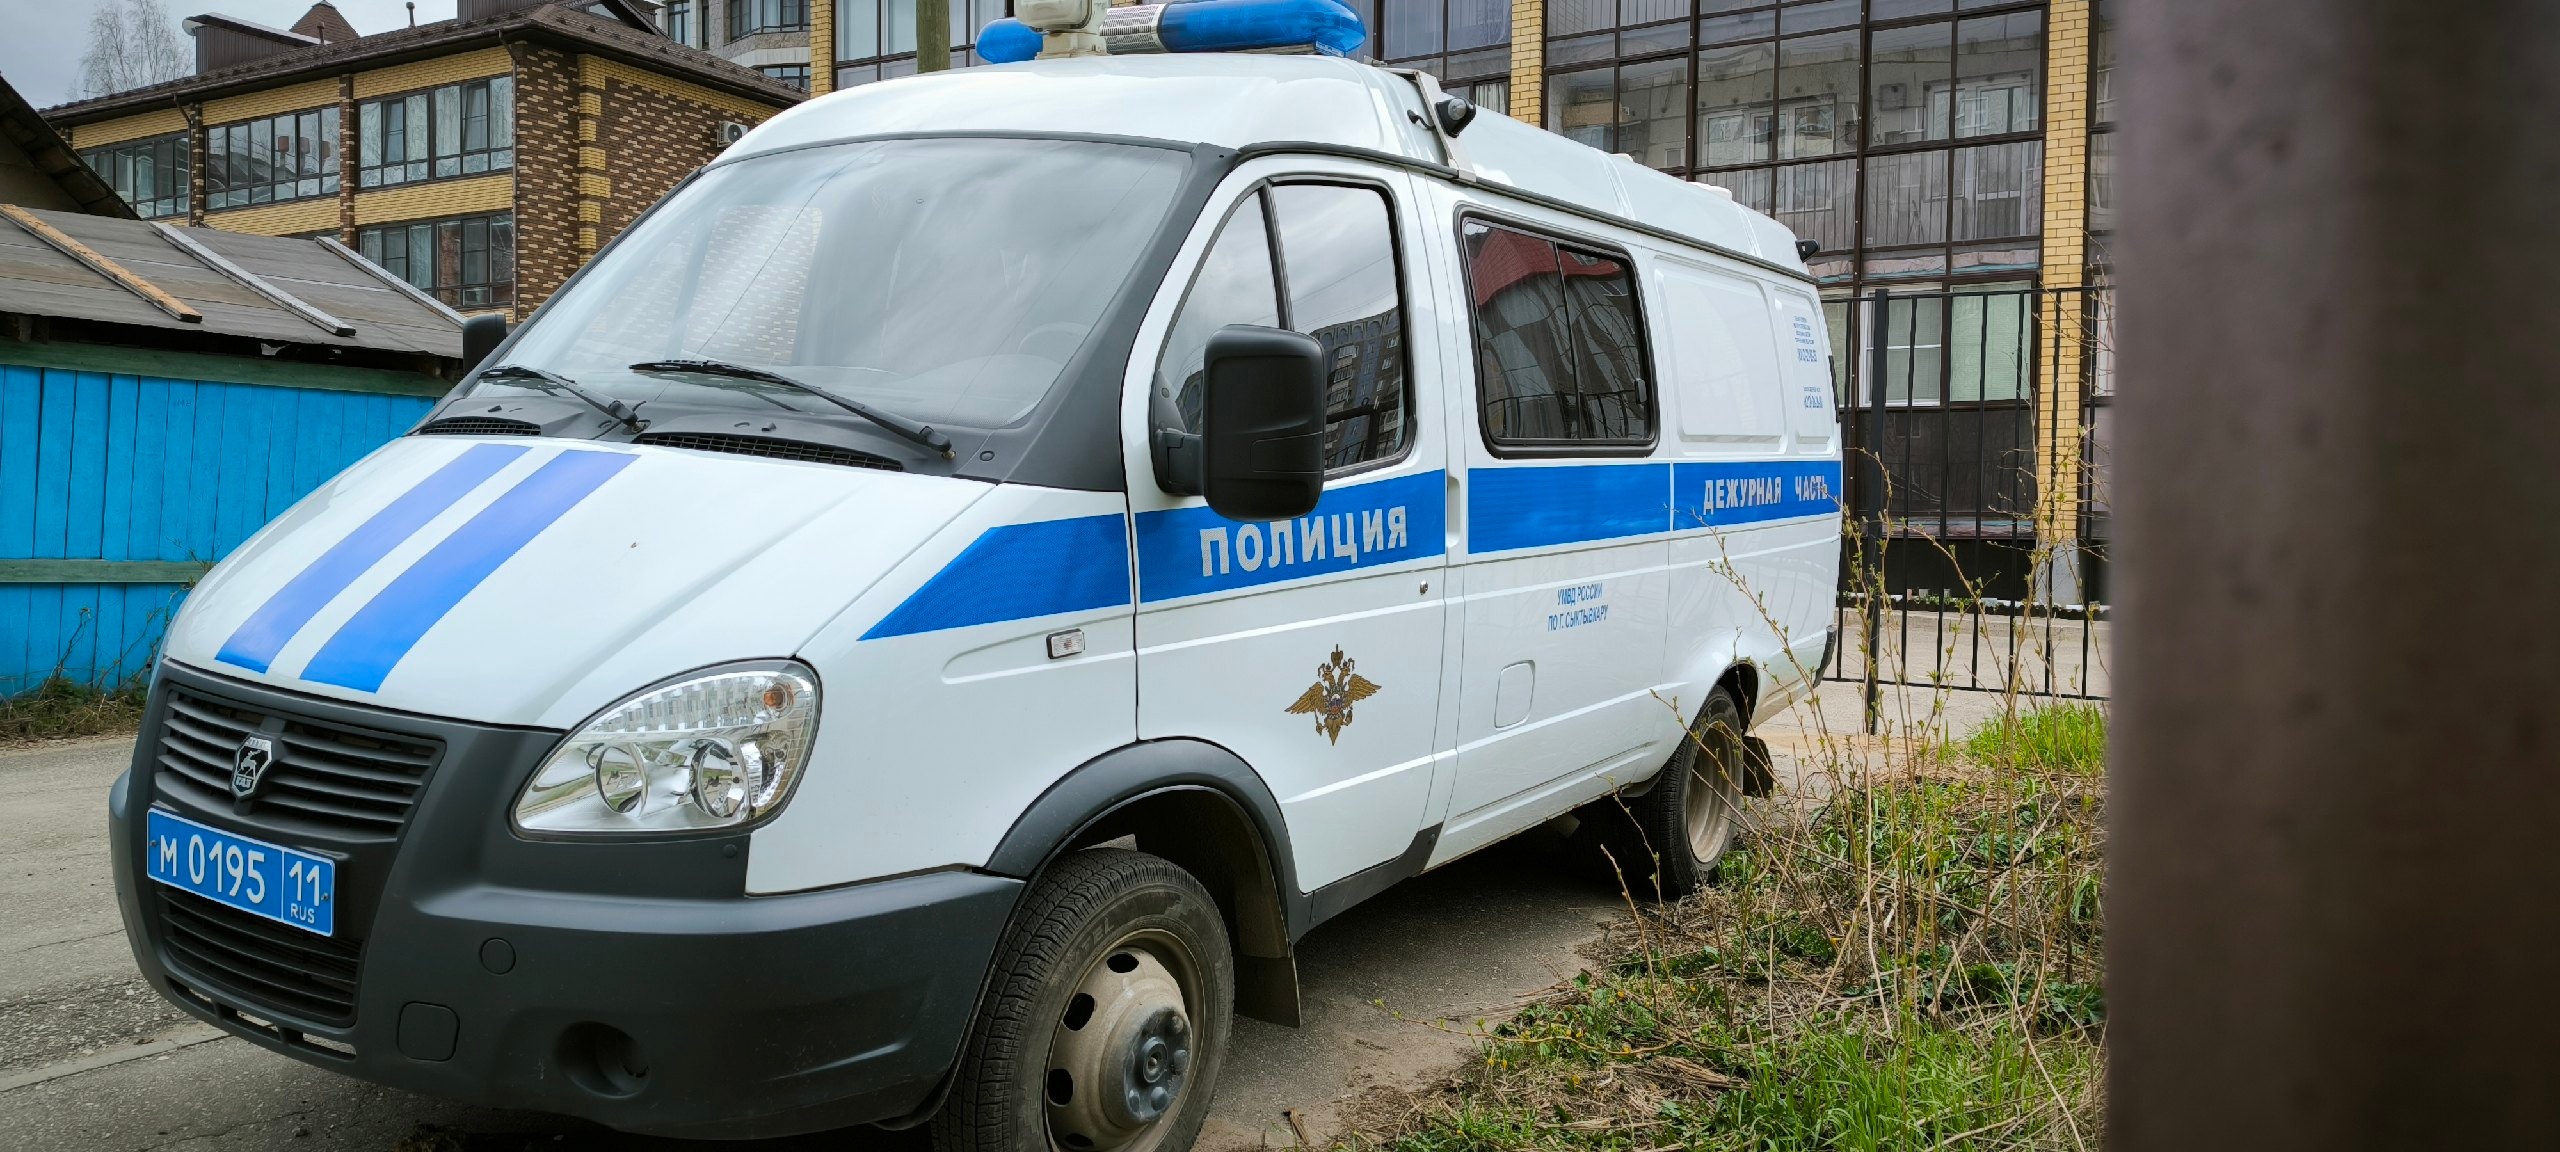 В Усинске полицейские поймали наркомана прямо у подъезда его дома